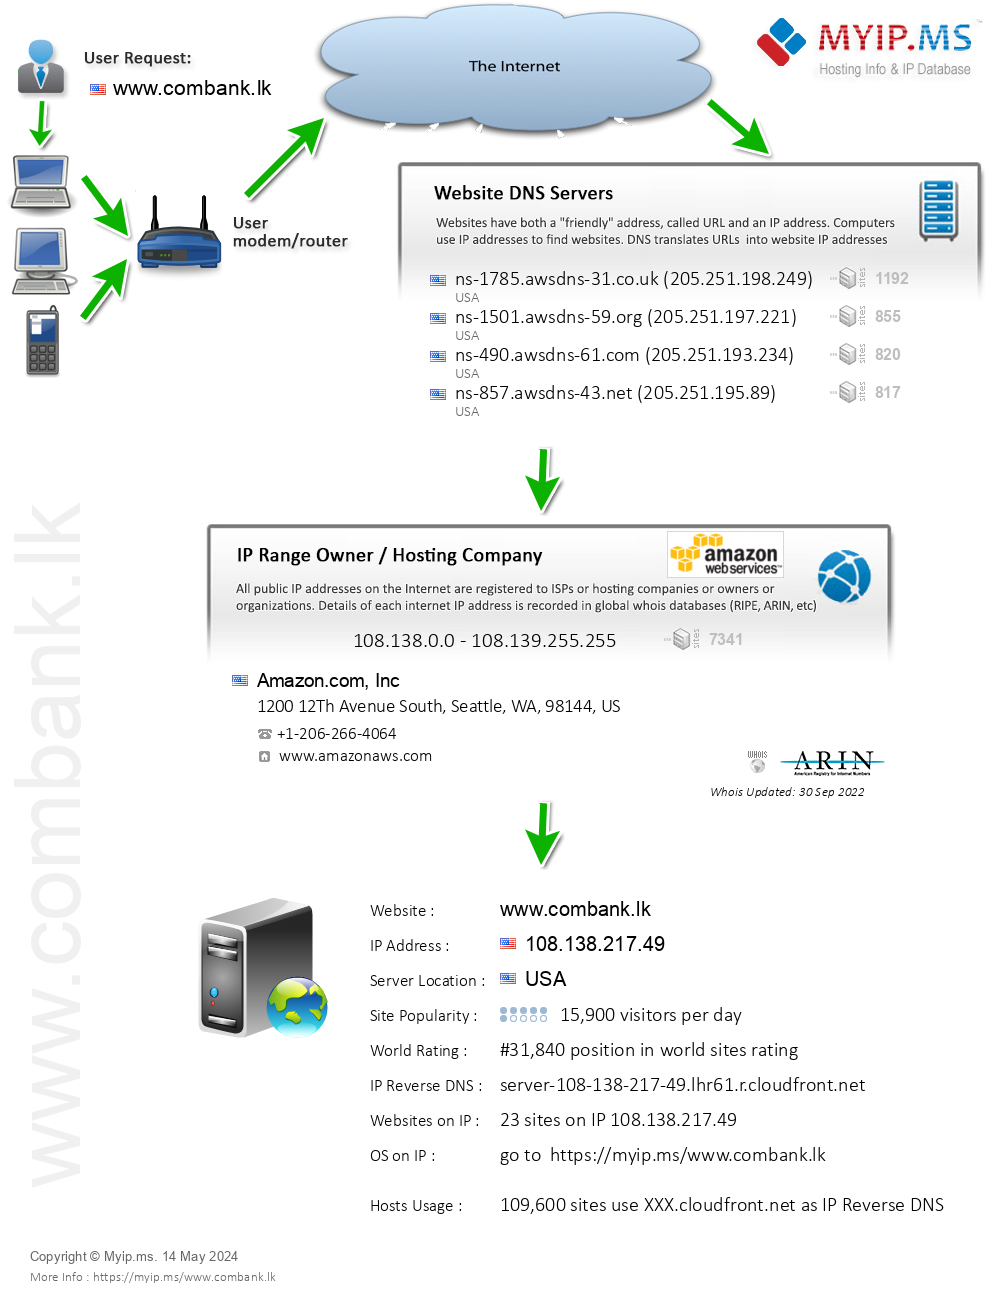 Combank.lk - Website Hosting Visual IP Diagram